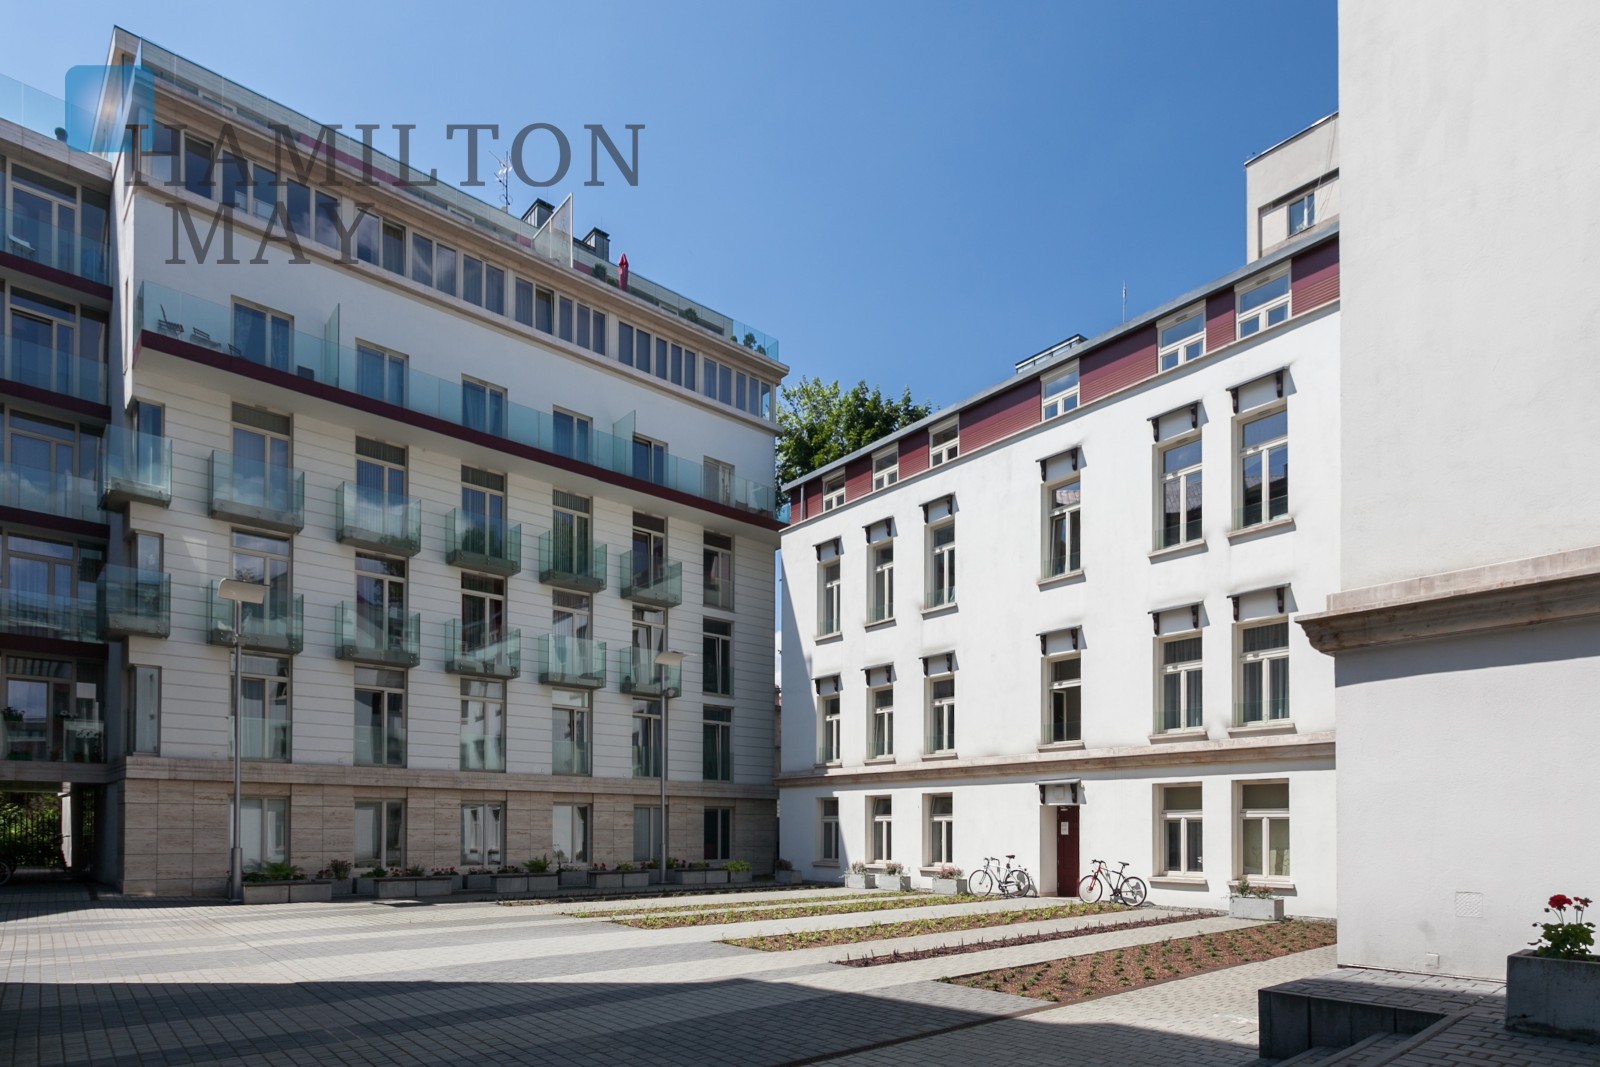 Sobieski Residence - Popularna inwestycja mieszkaniowa w spokojnym otoczeniu Starego Miasta